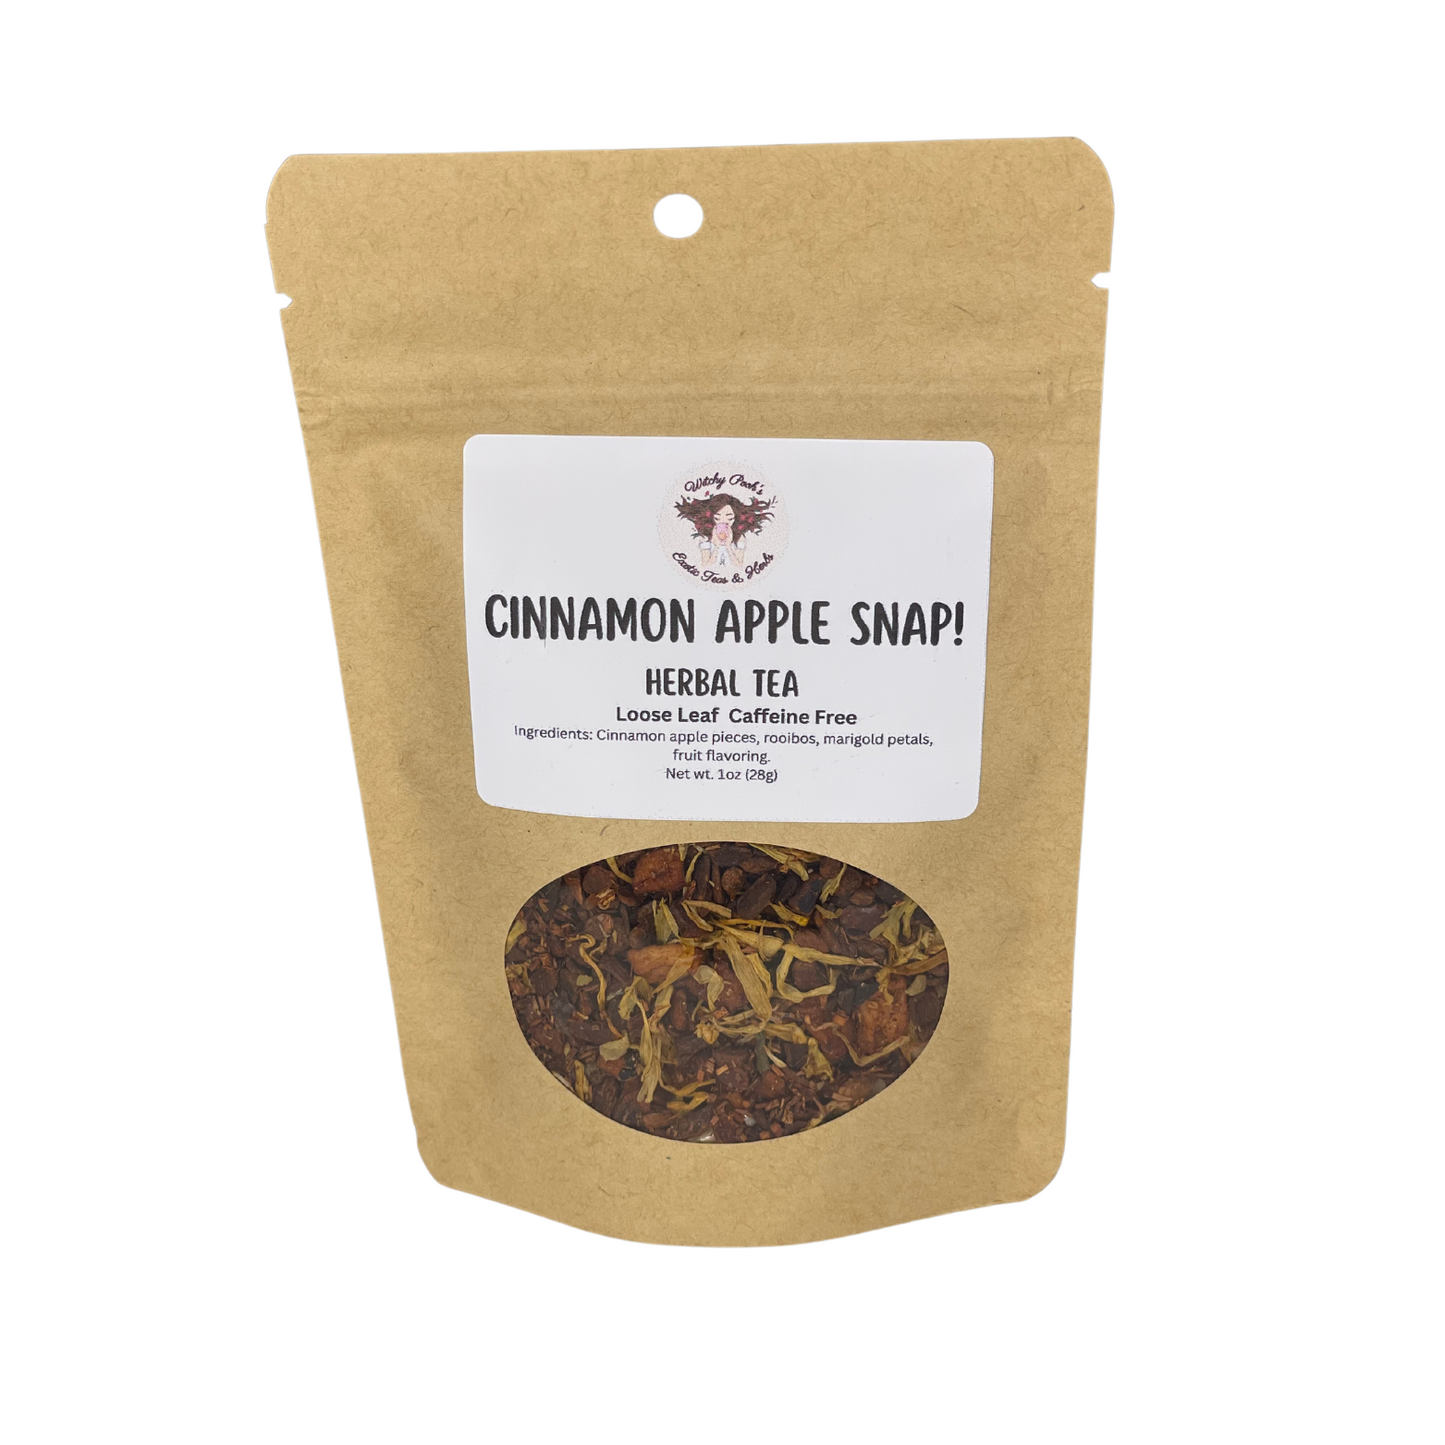 Cinnamon Apple Snap! Loose Leaf Apple Fruit Rooibos Herbal Tea, Caffeine Free